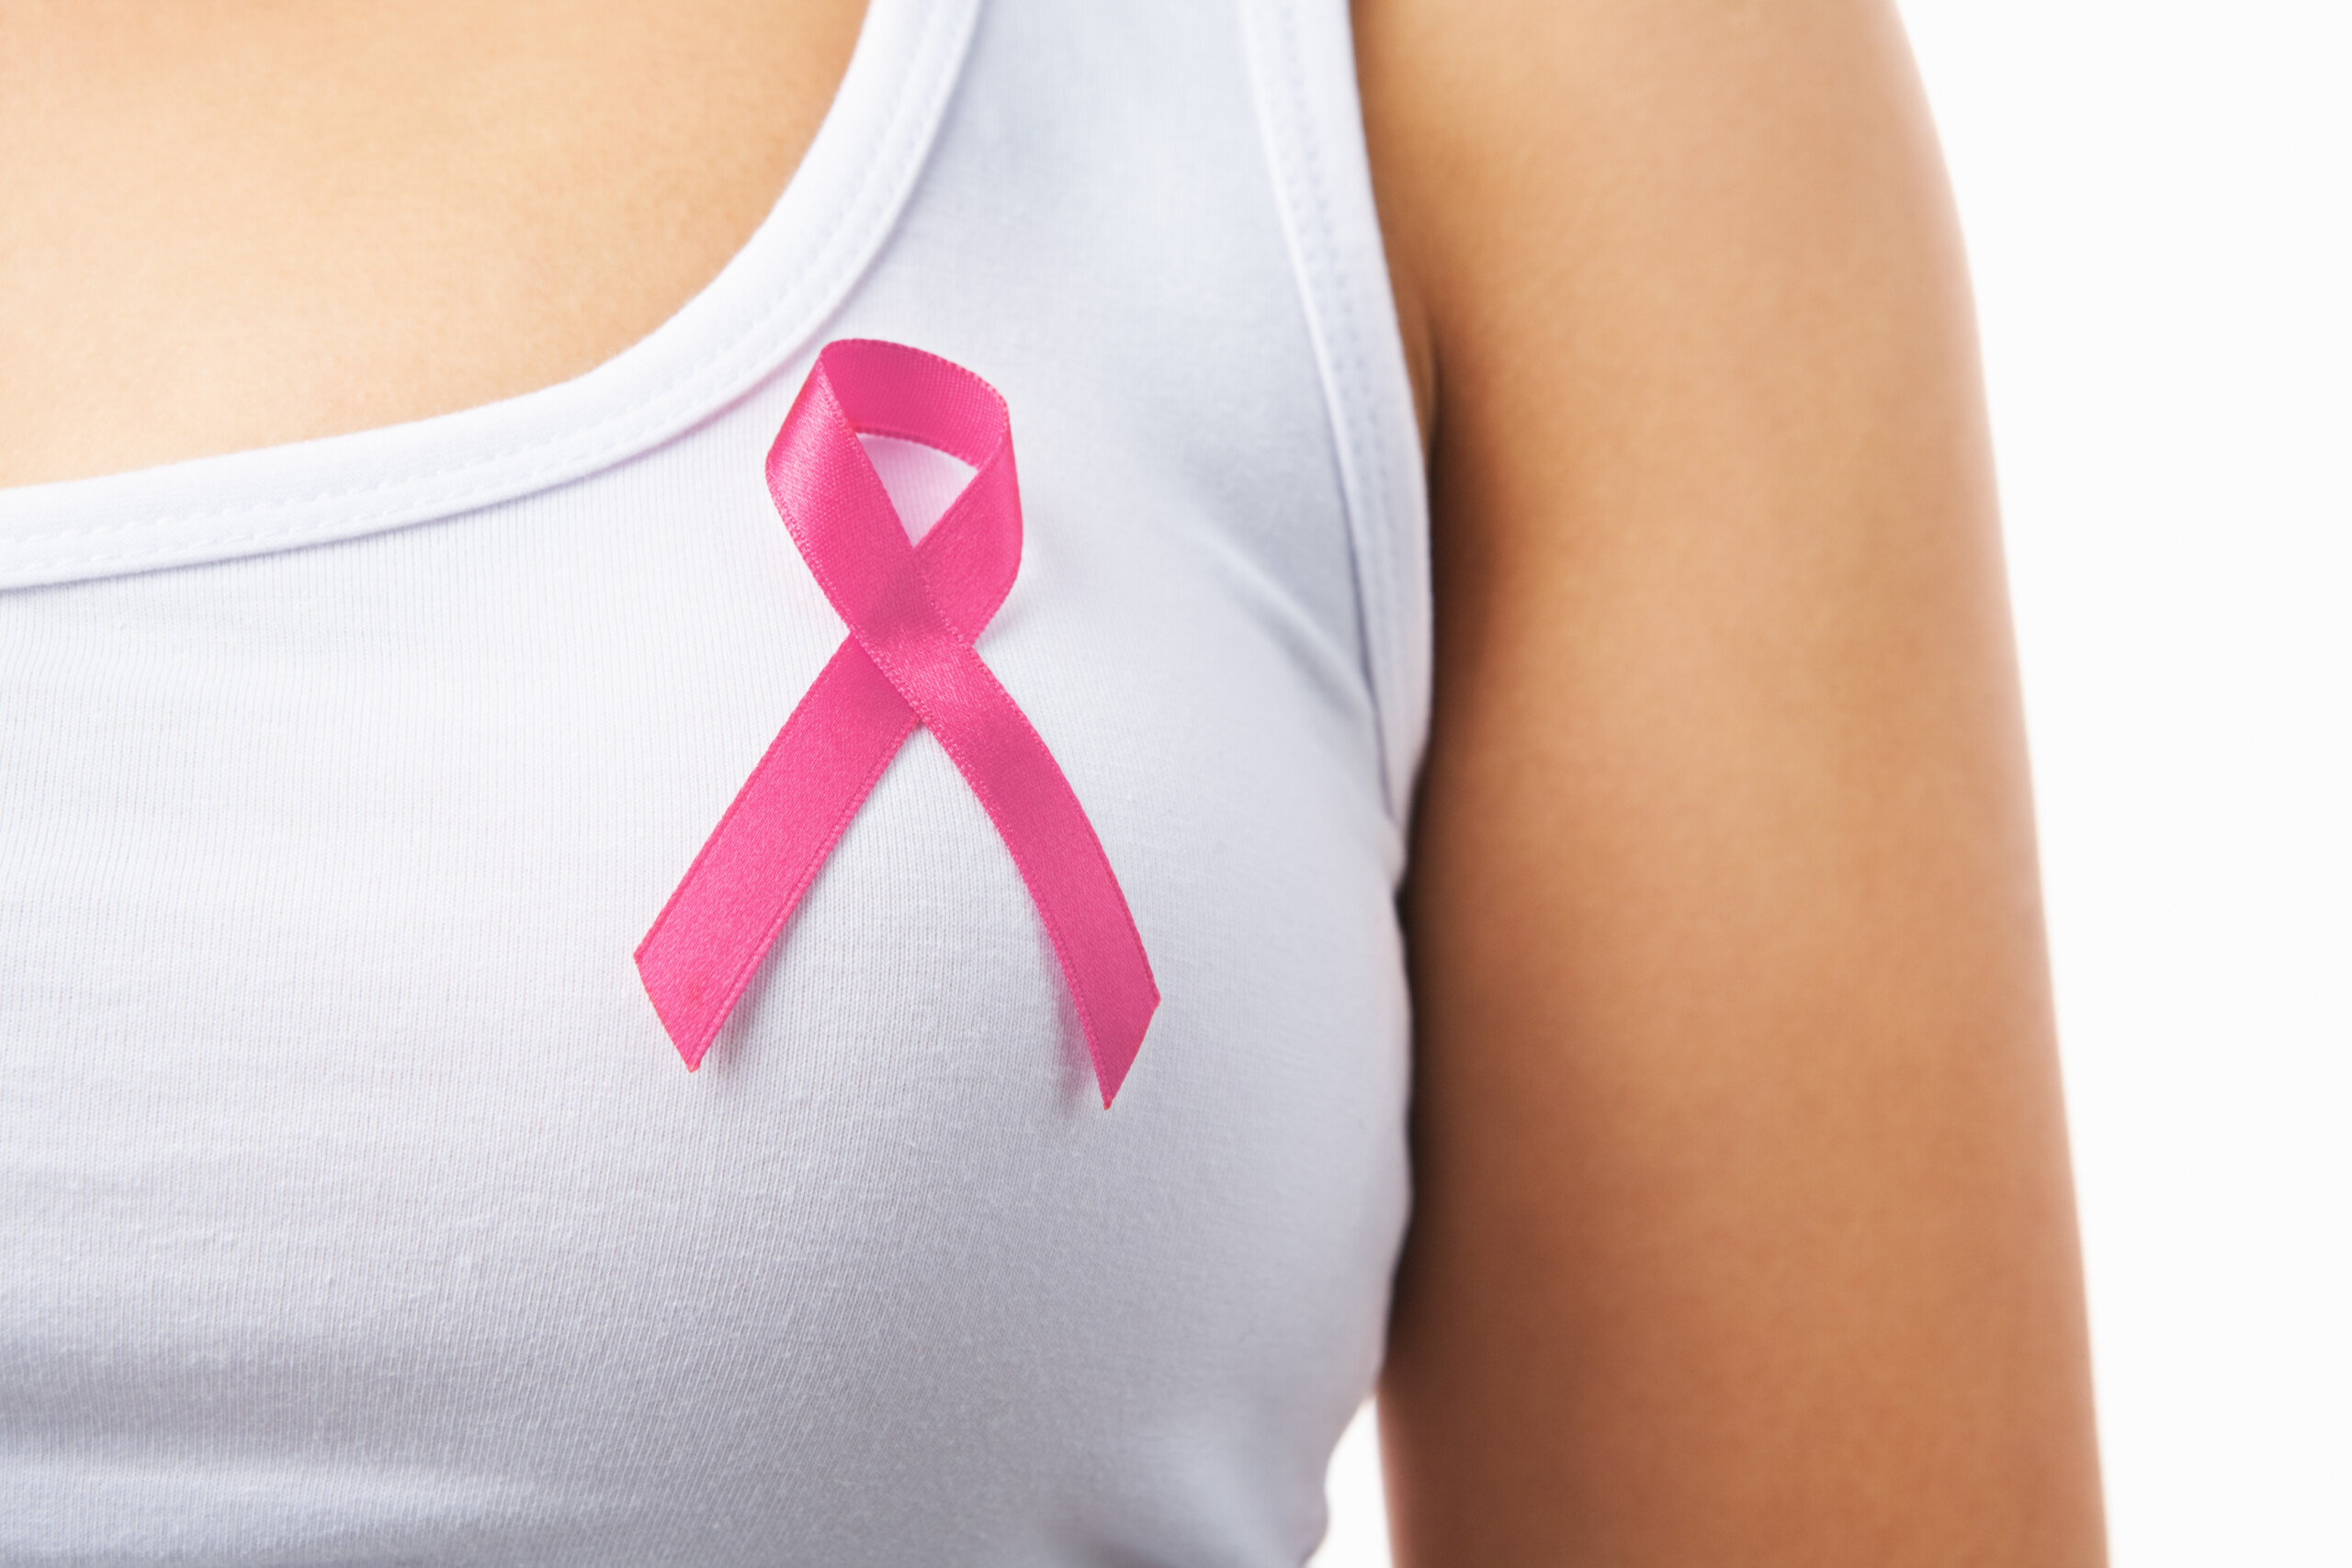 cancro da mama pancada traumatismo lesão